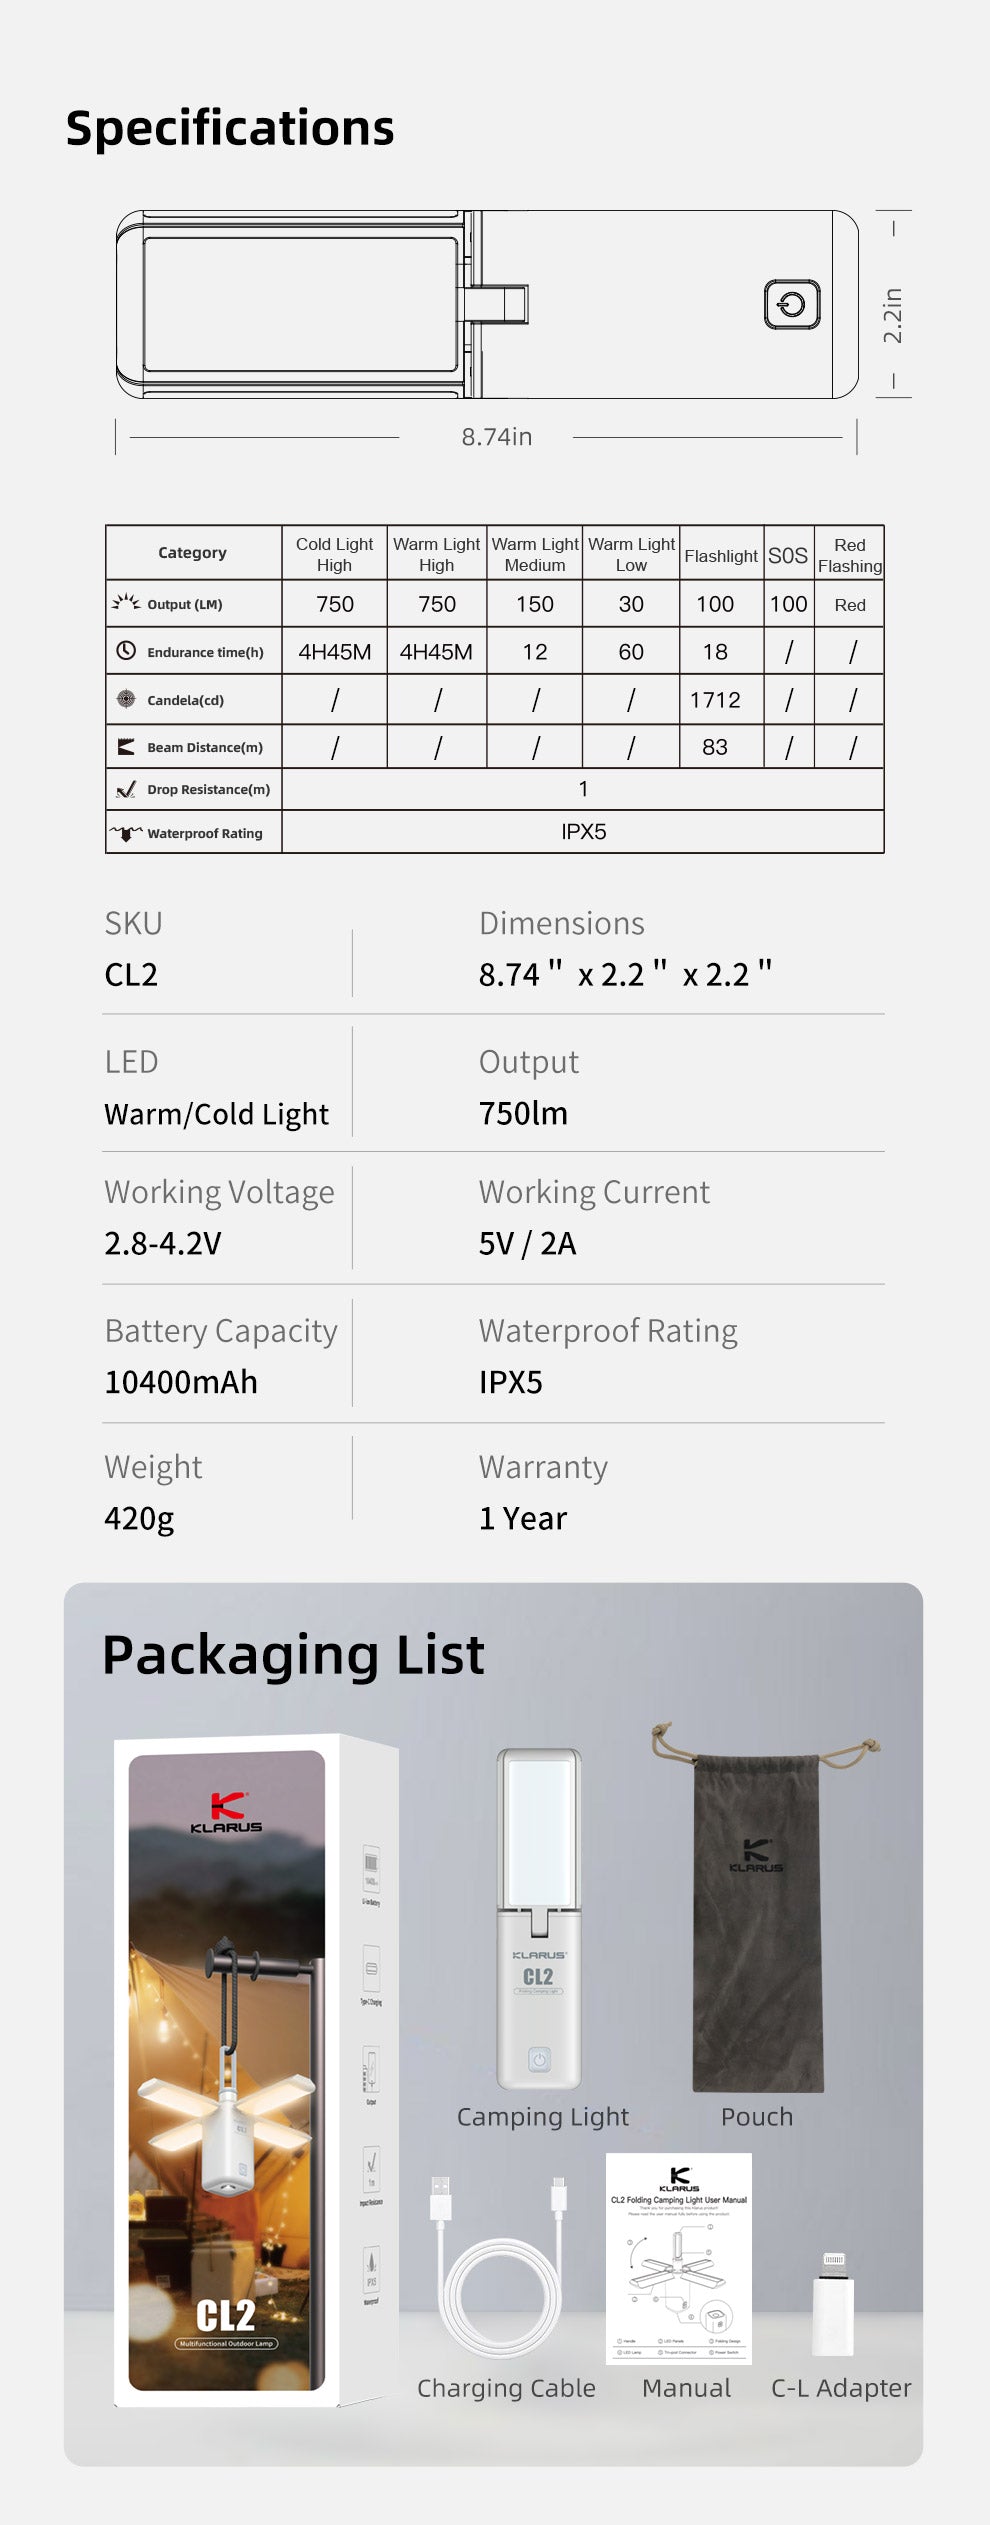 Verpackungsliste Camping Light Pouch Ladekabel Handbuch C-L Adapter